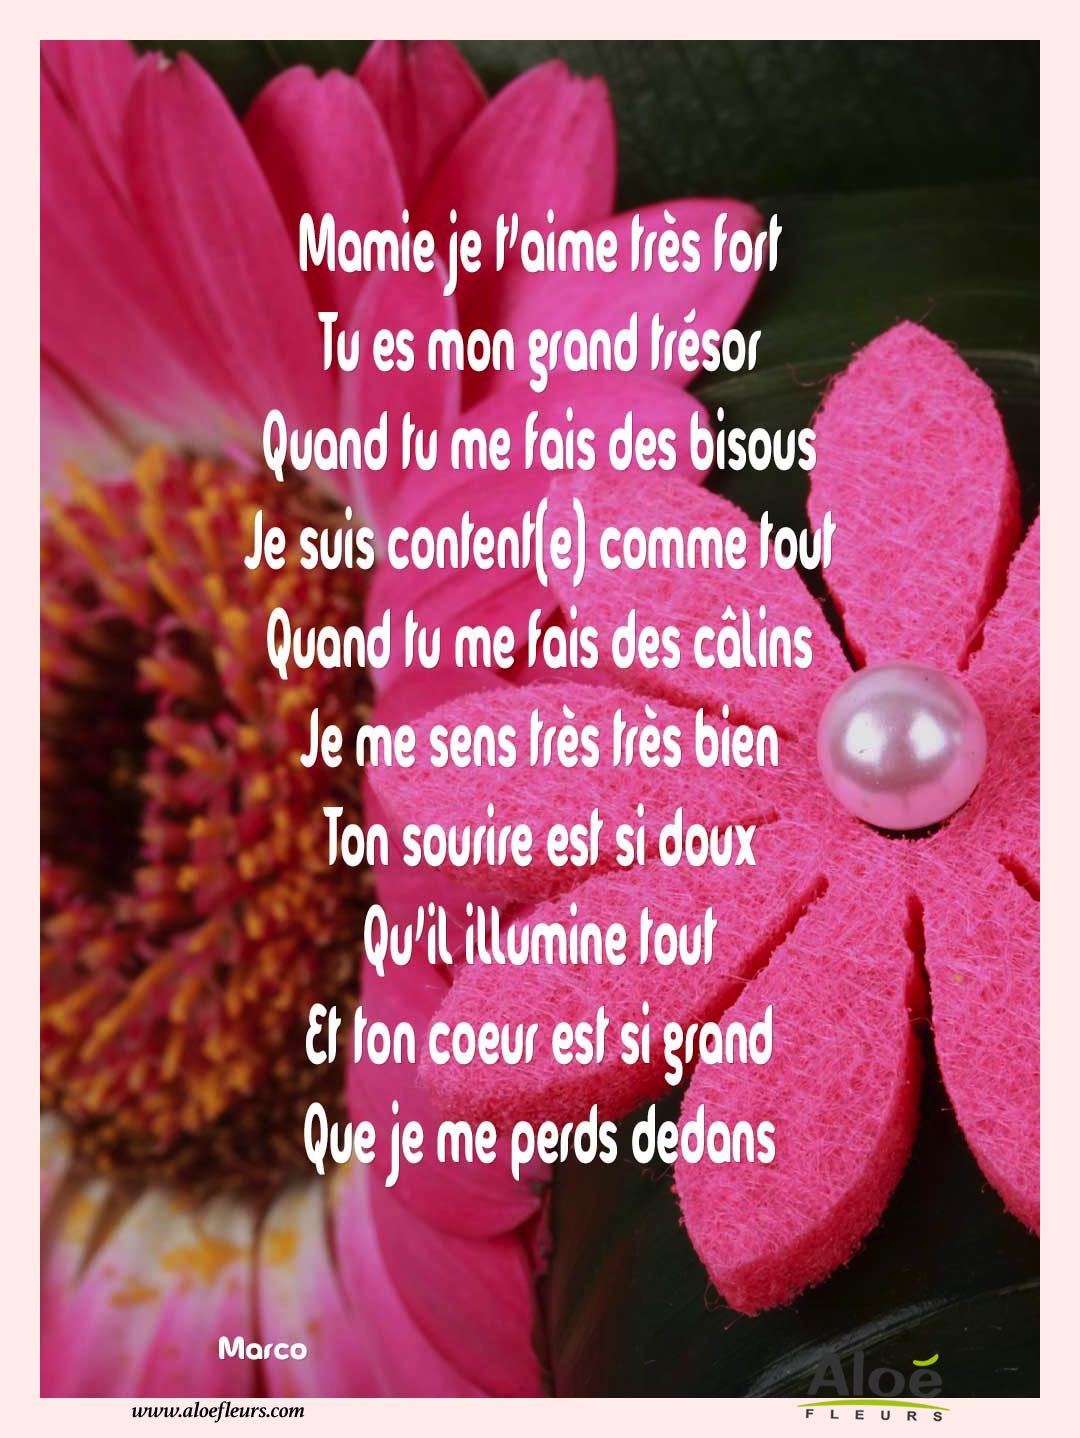 Poemes Fete Des Grands Meres 2016 Aloefleurs.com   Mamie Je T'aime Très Fort 